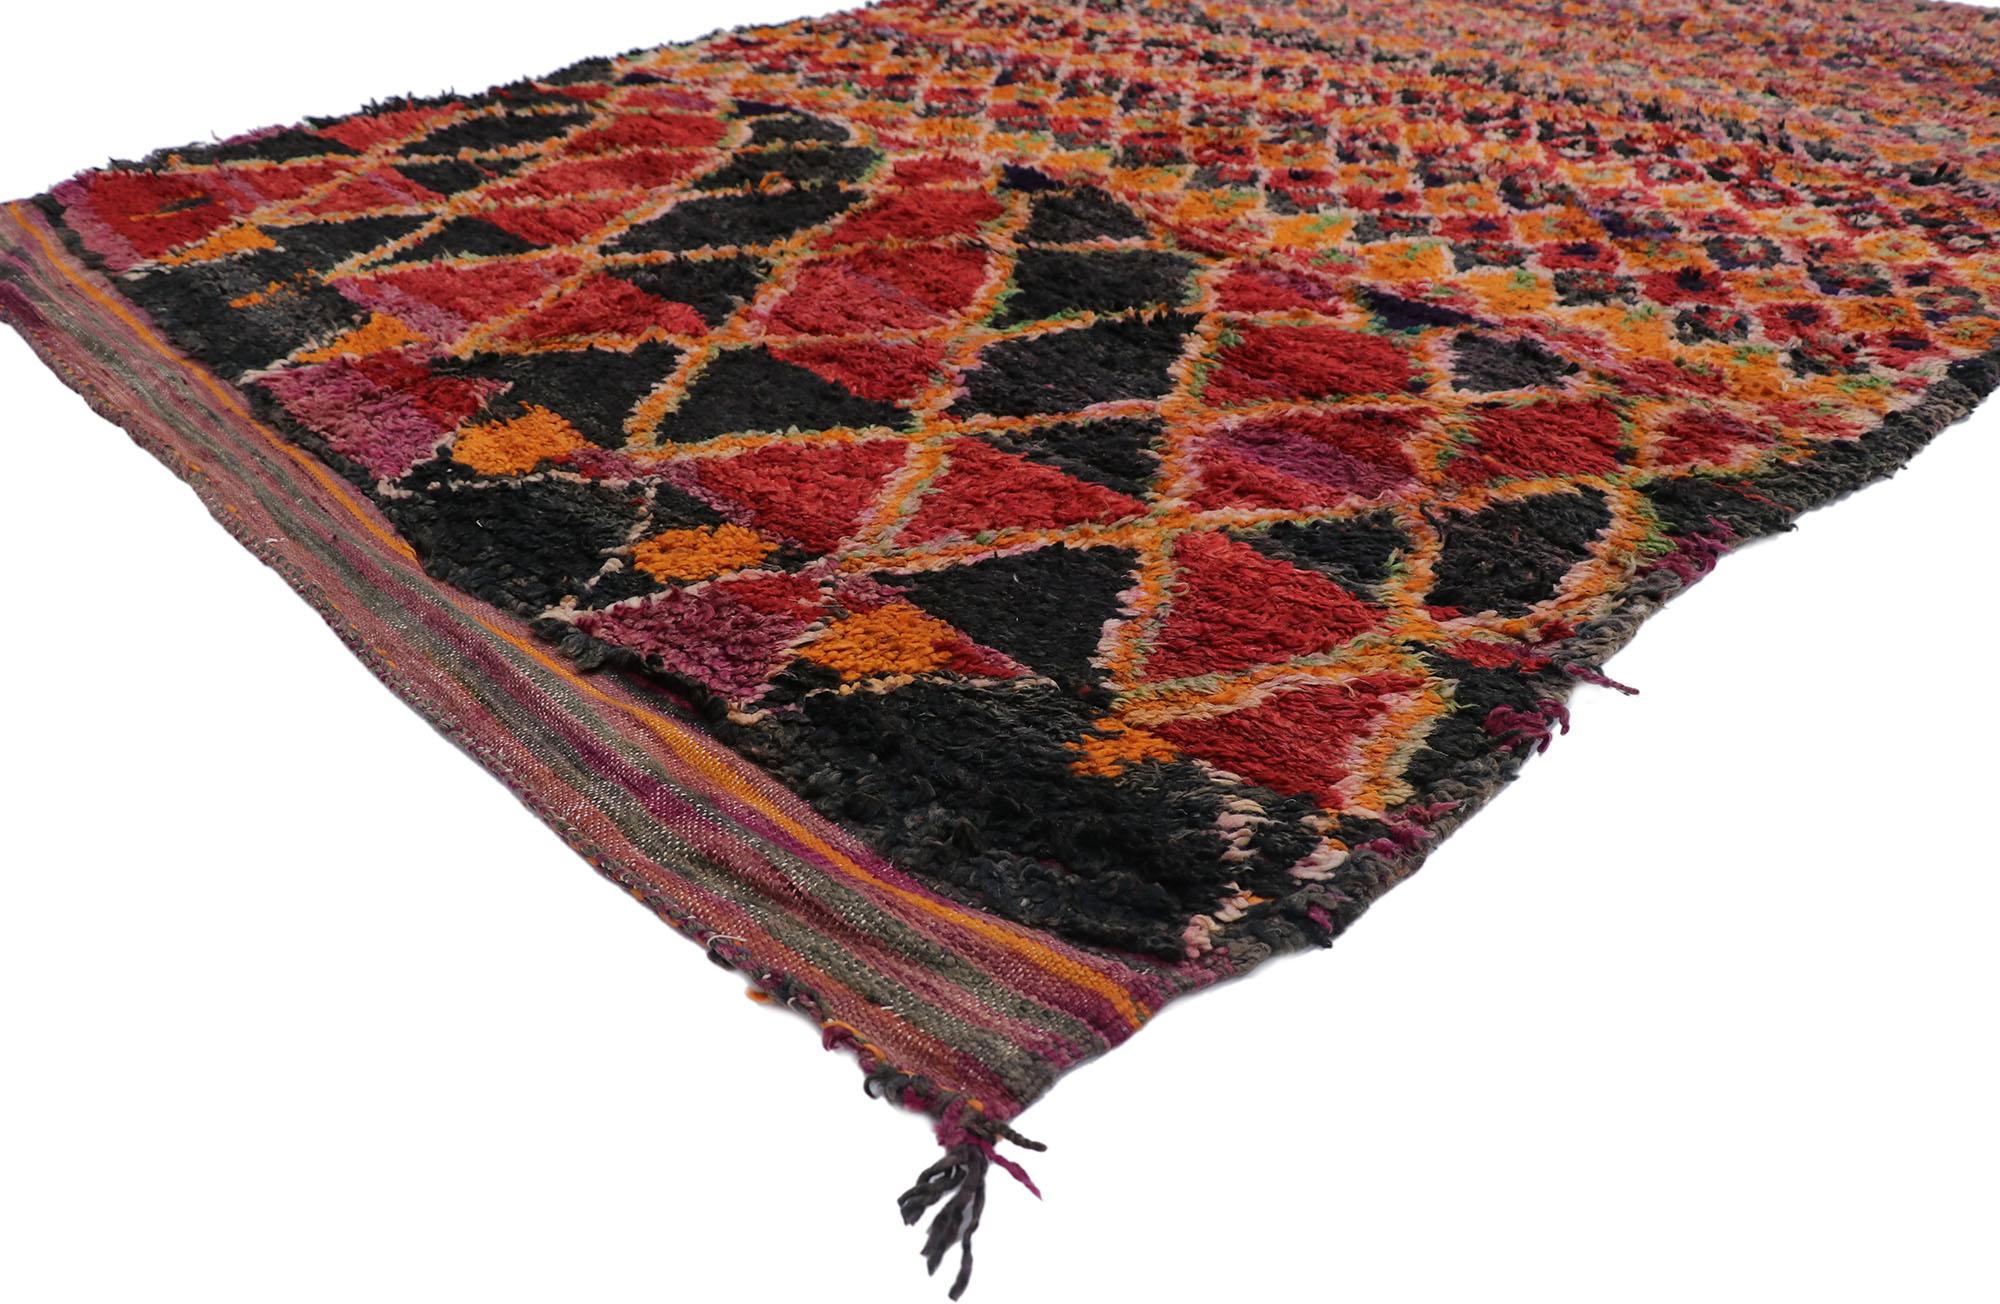 21284 Marokkanischer Berberteppich Vintage, 06'02 x 09'09.
Dieser handgeknüpfte marokkanische Berberteppich aus Wolle trifft auf farbenfrohen Boho-Chic. Das Rautenmuster und die satten Erdtöne, die in dieses Stück eingewebt sind, sorgen für einen